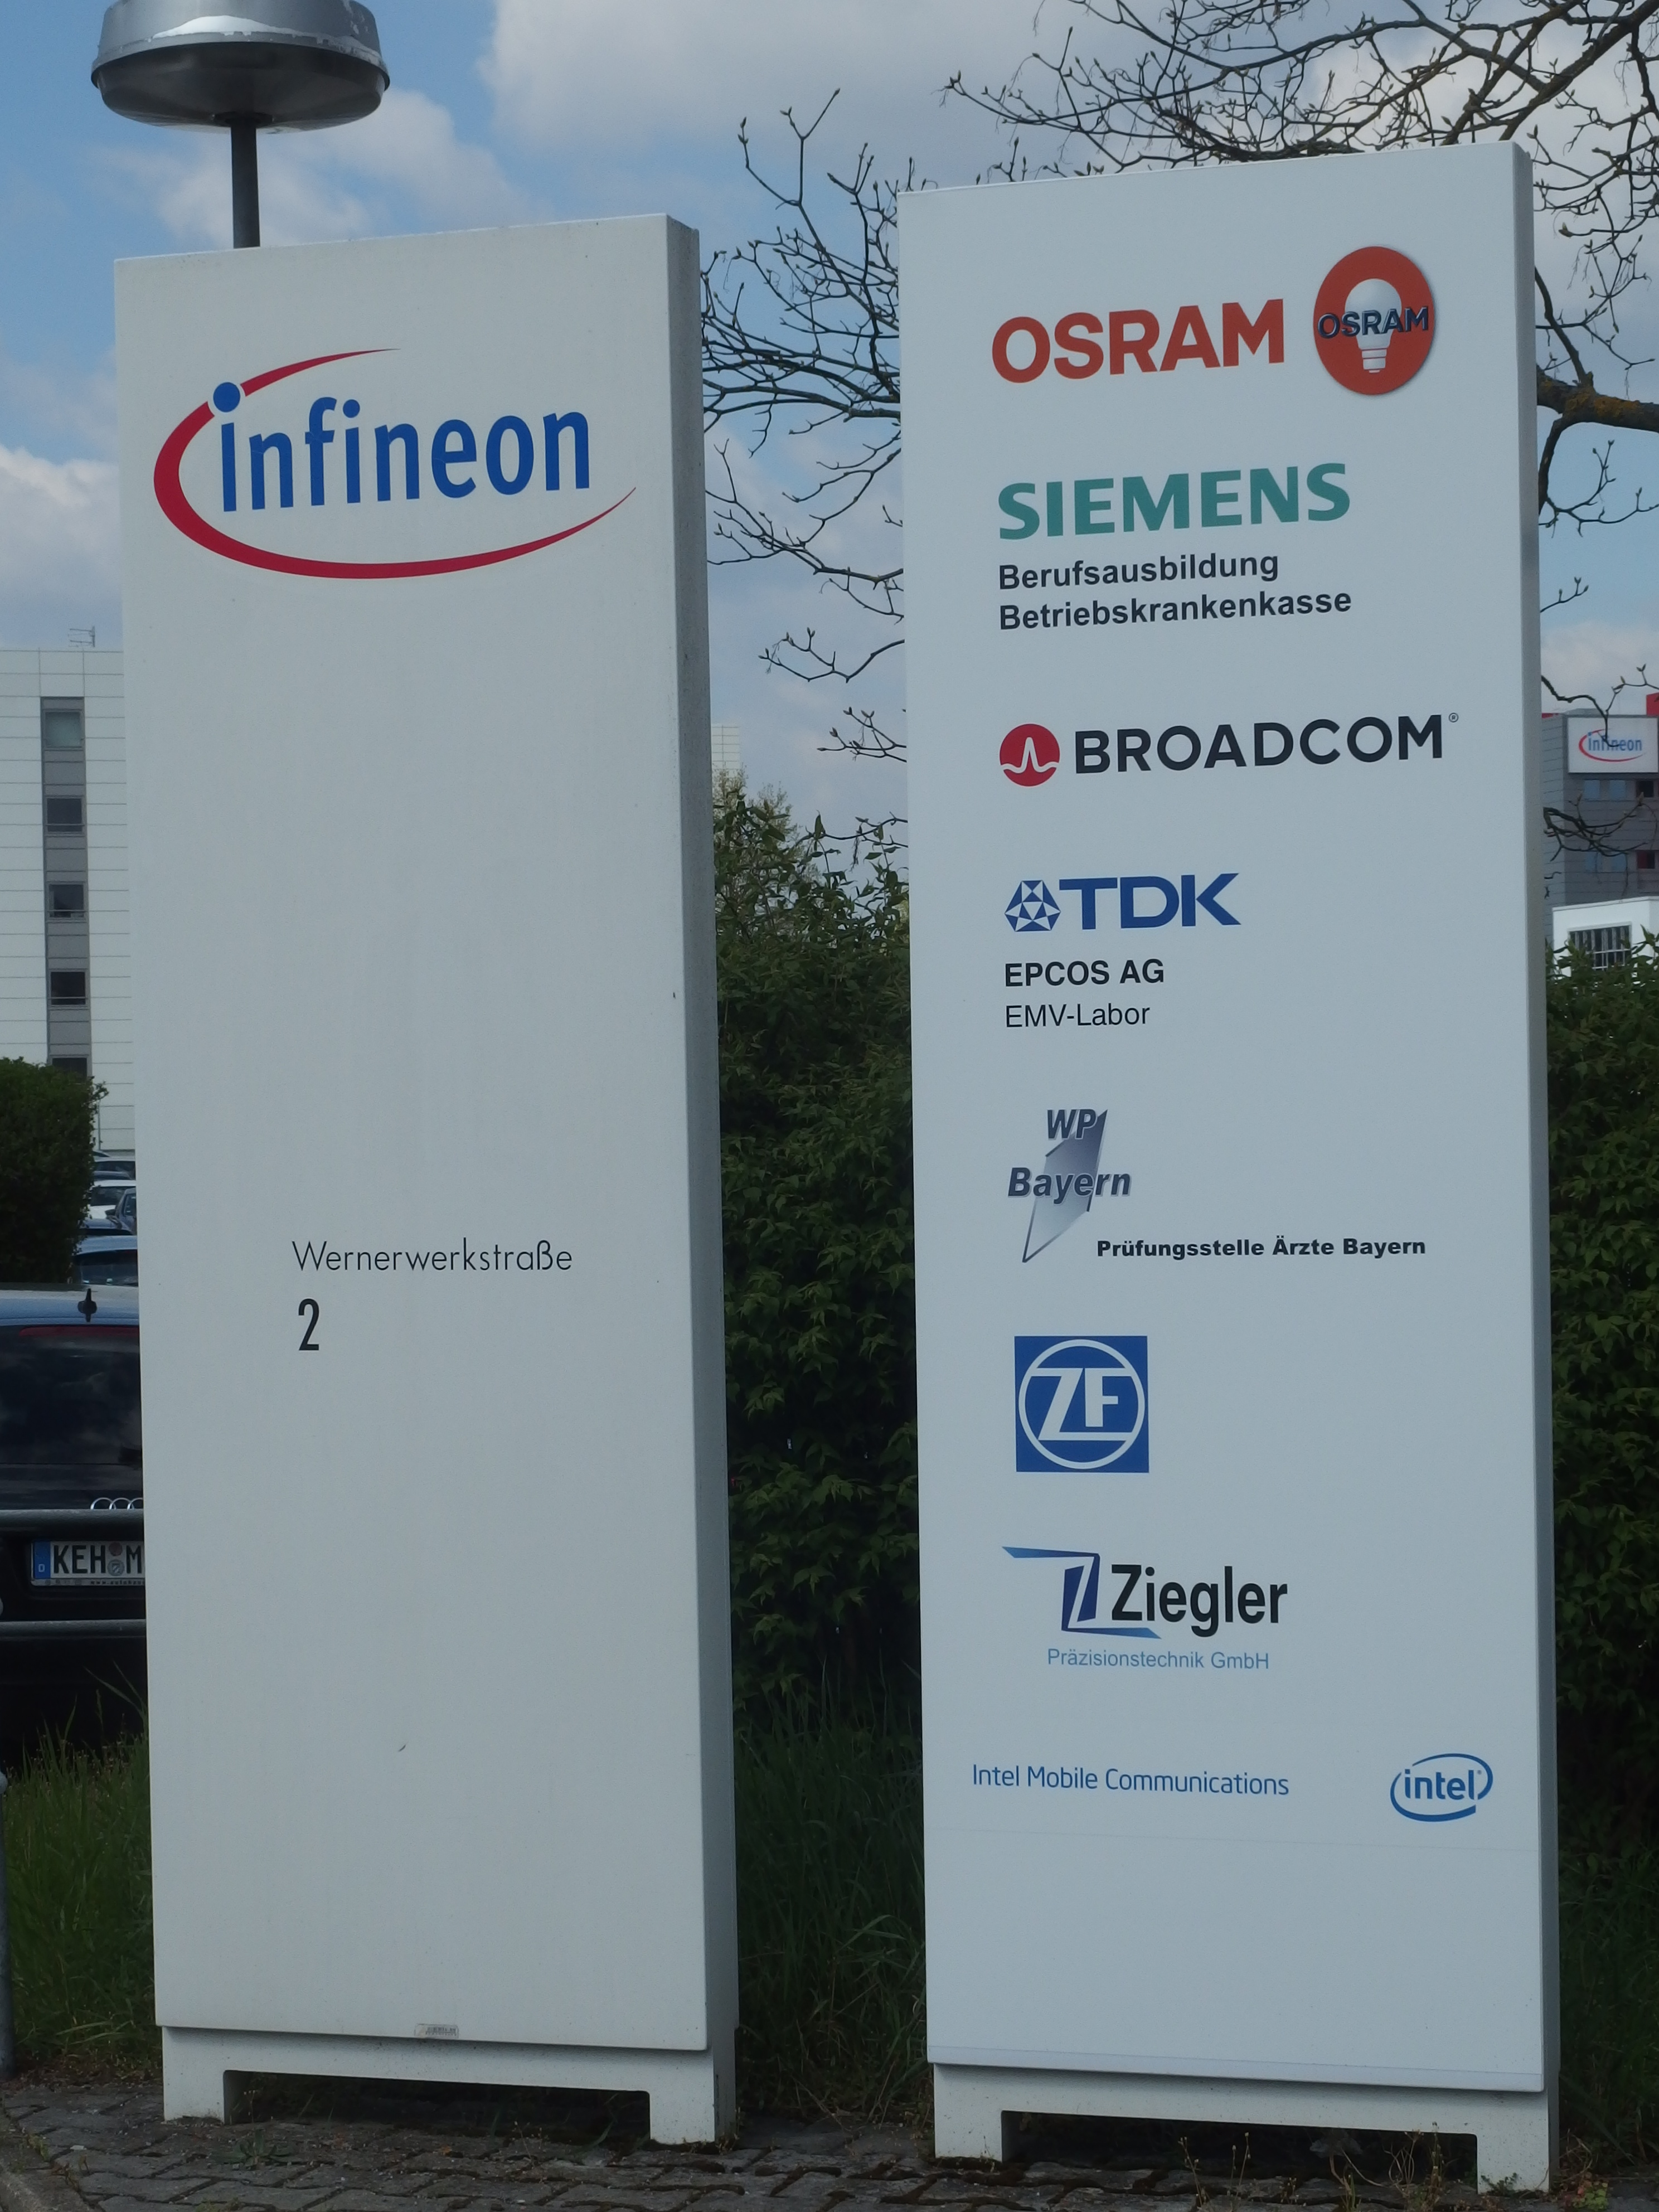 Hinweistafel mit den auf dem Infineon-Gelände befindlichen Firmen